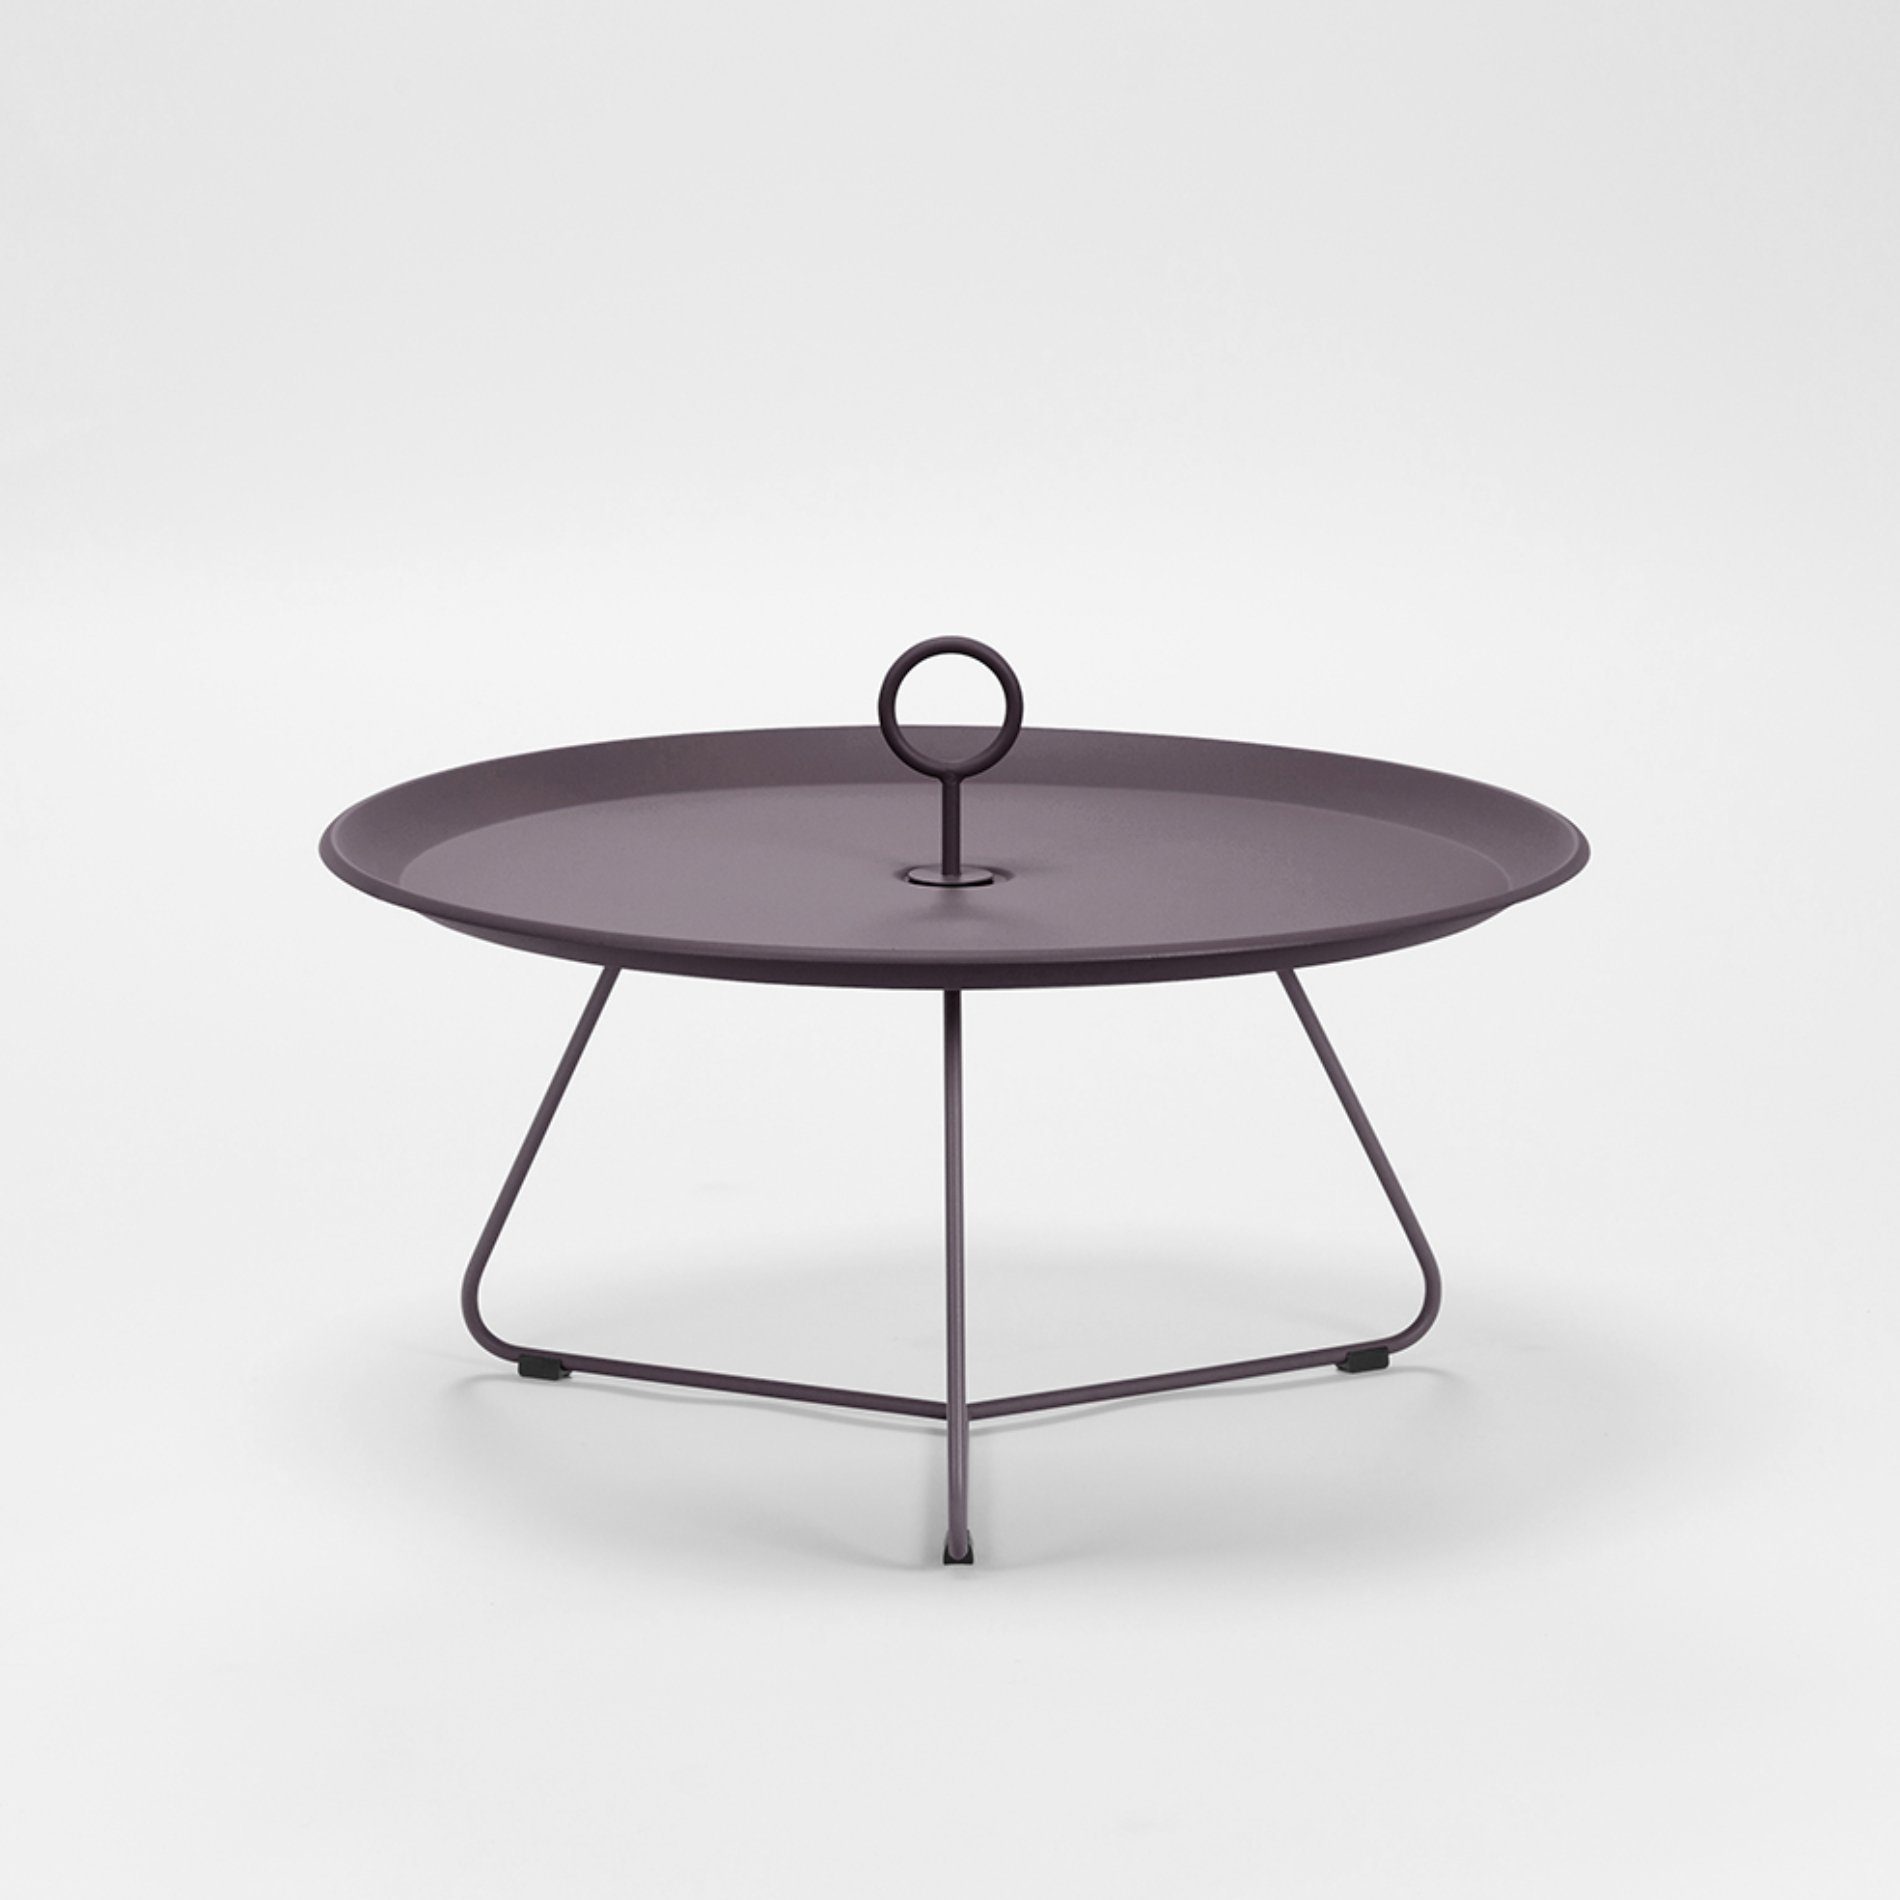 Tray Table "Eyelet" von Houe, Durchmesser 70 cm, plum